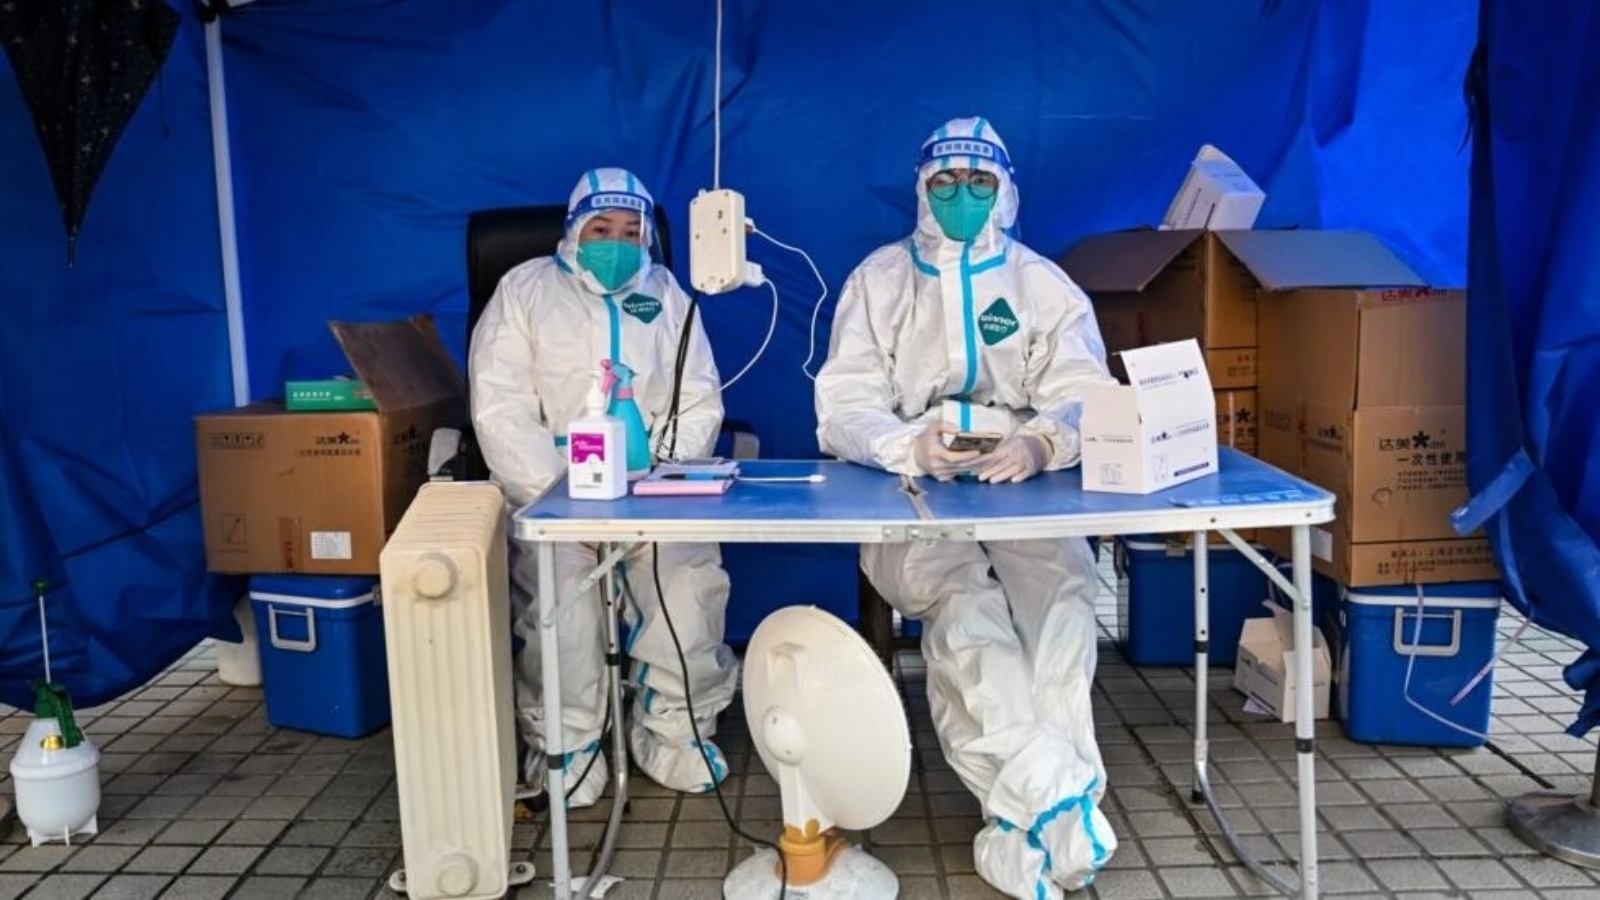 عاملان صحيان ينتظران لاستقبال أشخاص لإجراء اختبار كوفيد-19 لهم في منطقة جينغان في شنغهاي في 22 ديسمبر 2022 